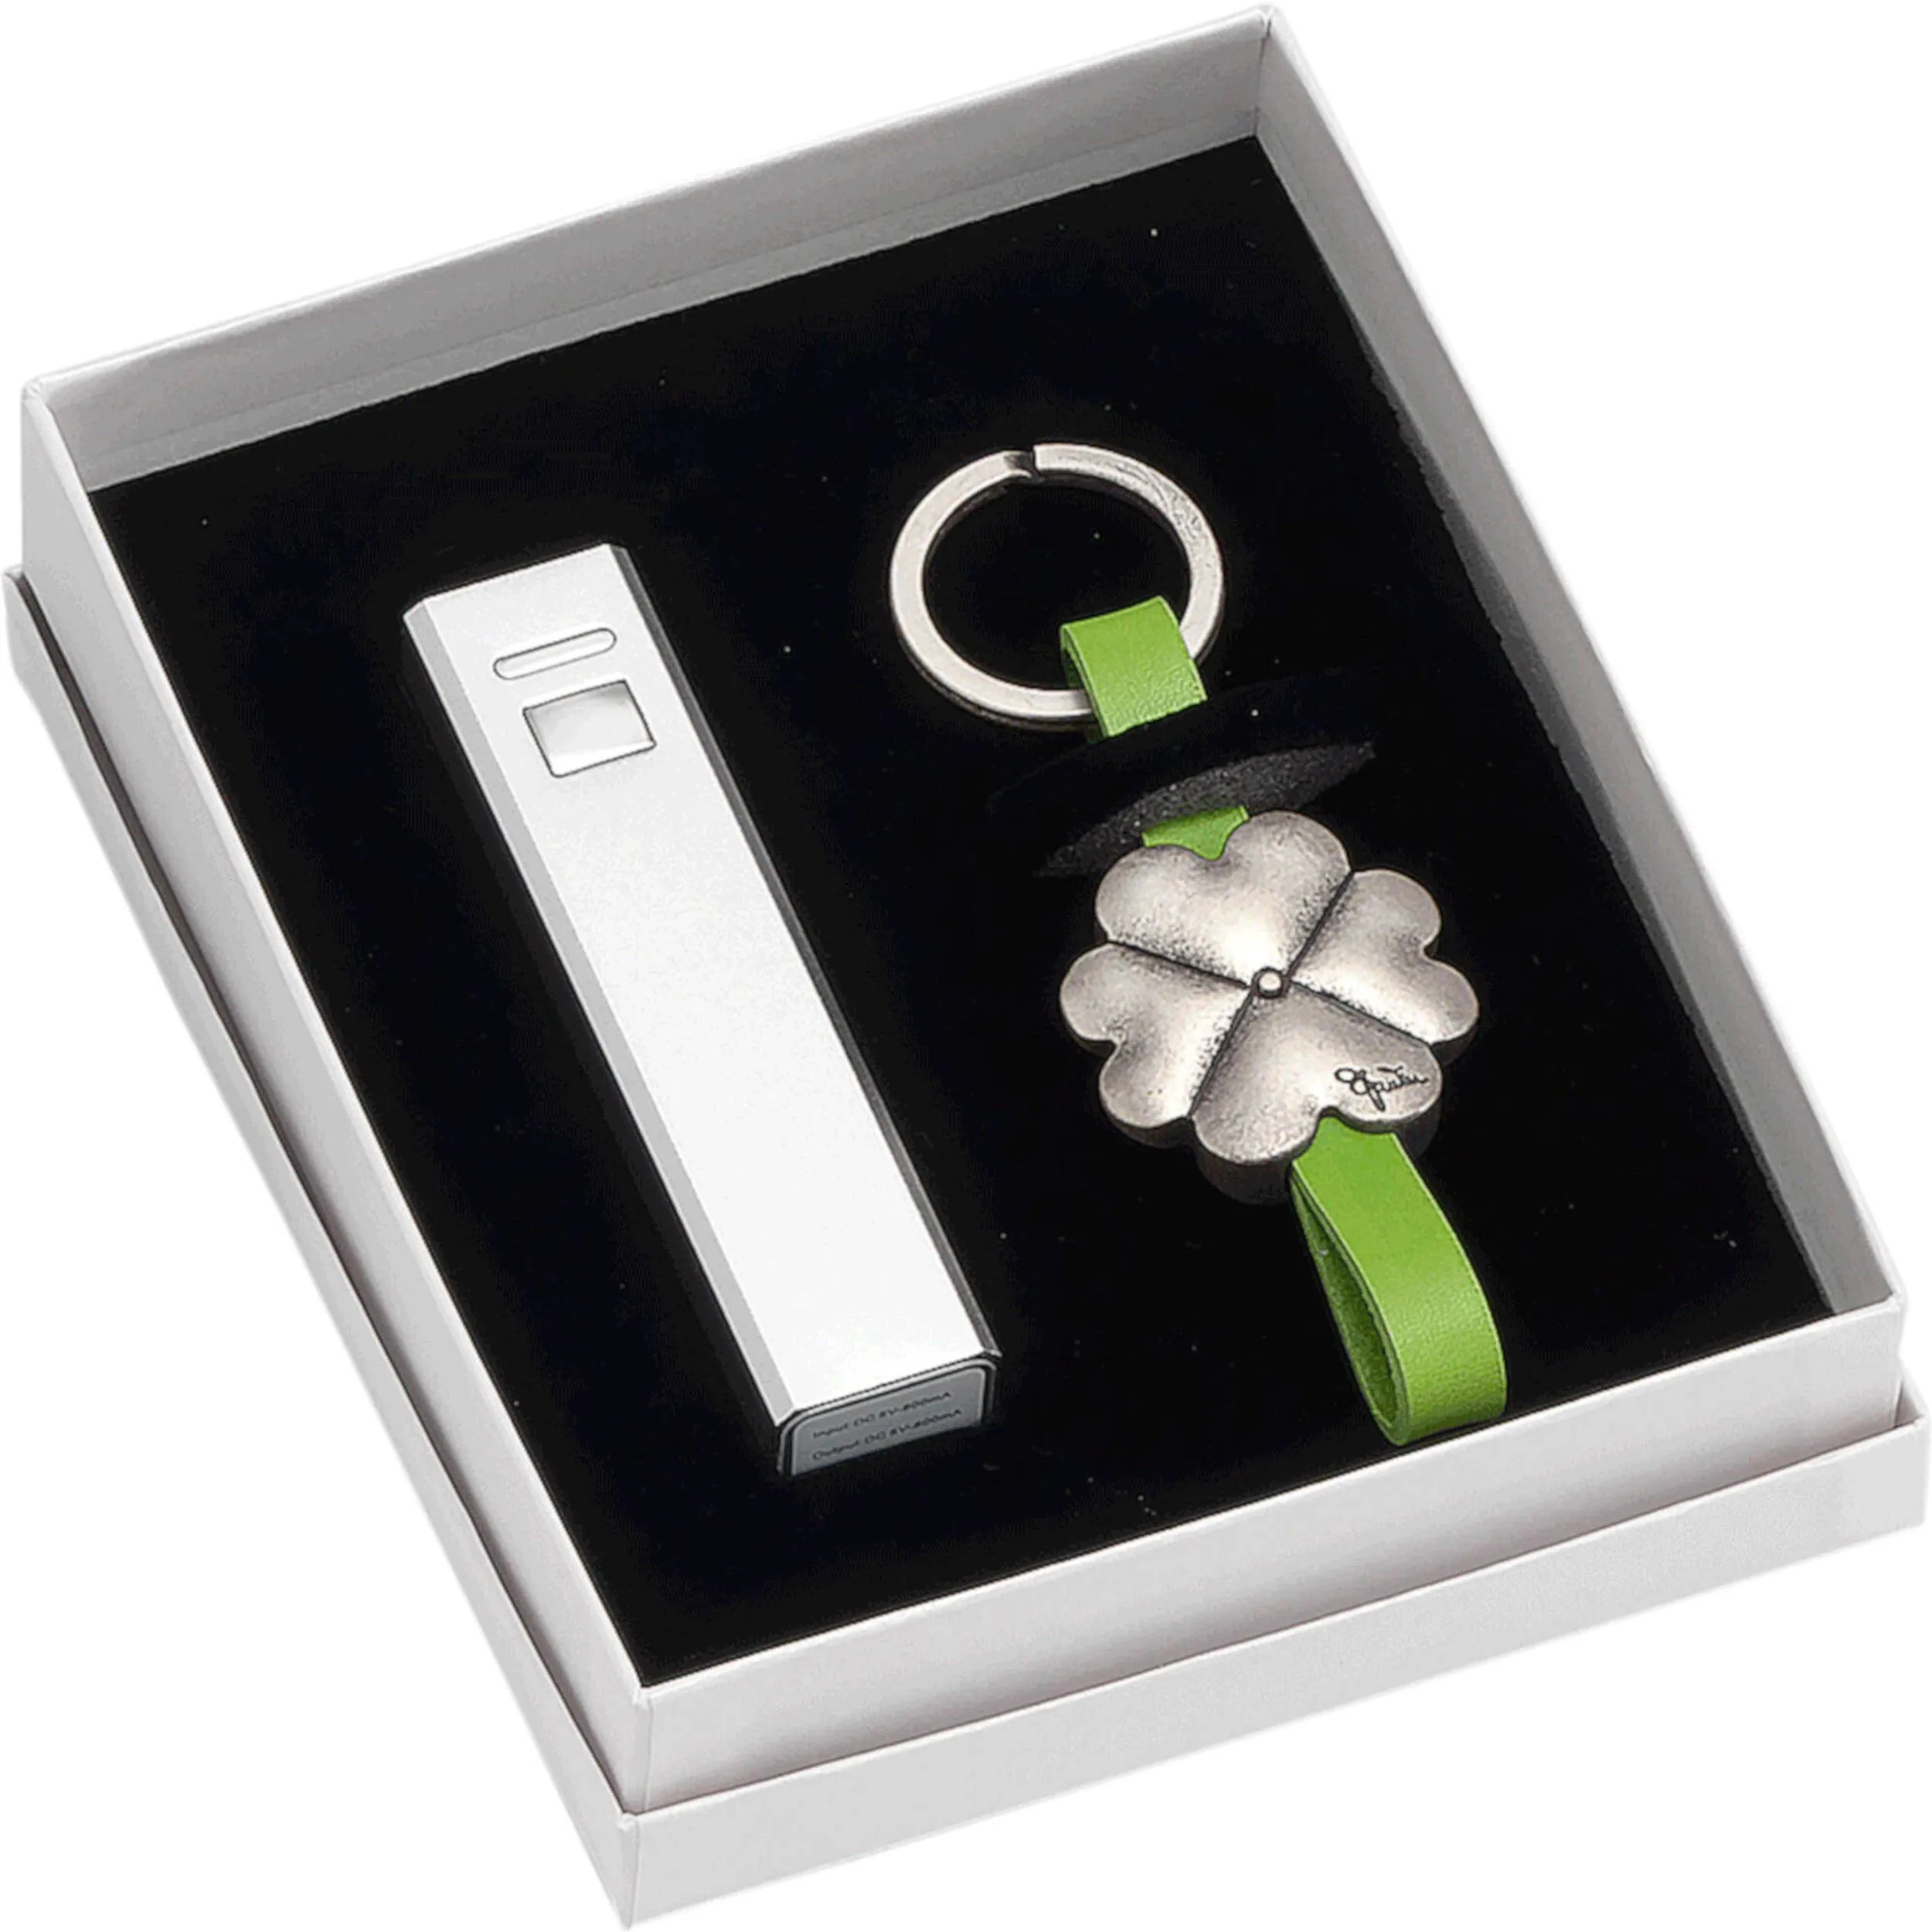 Power Bank 2600 mAh colore Bianco con portachiavi argento Quadrifoglio con manuale 3xh9 cm in scatola regalo , bomboniera